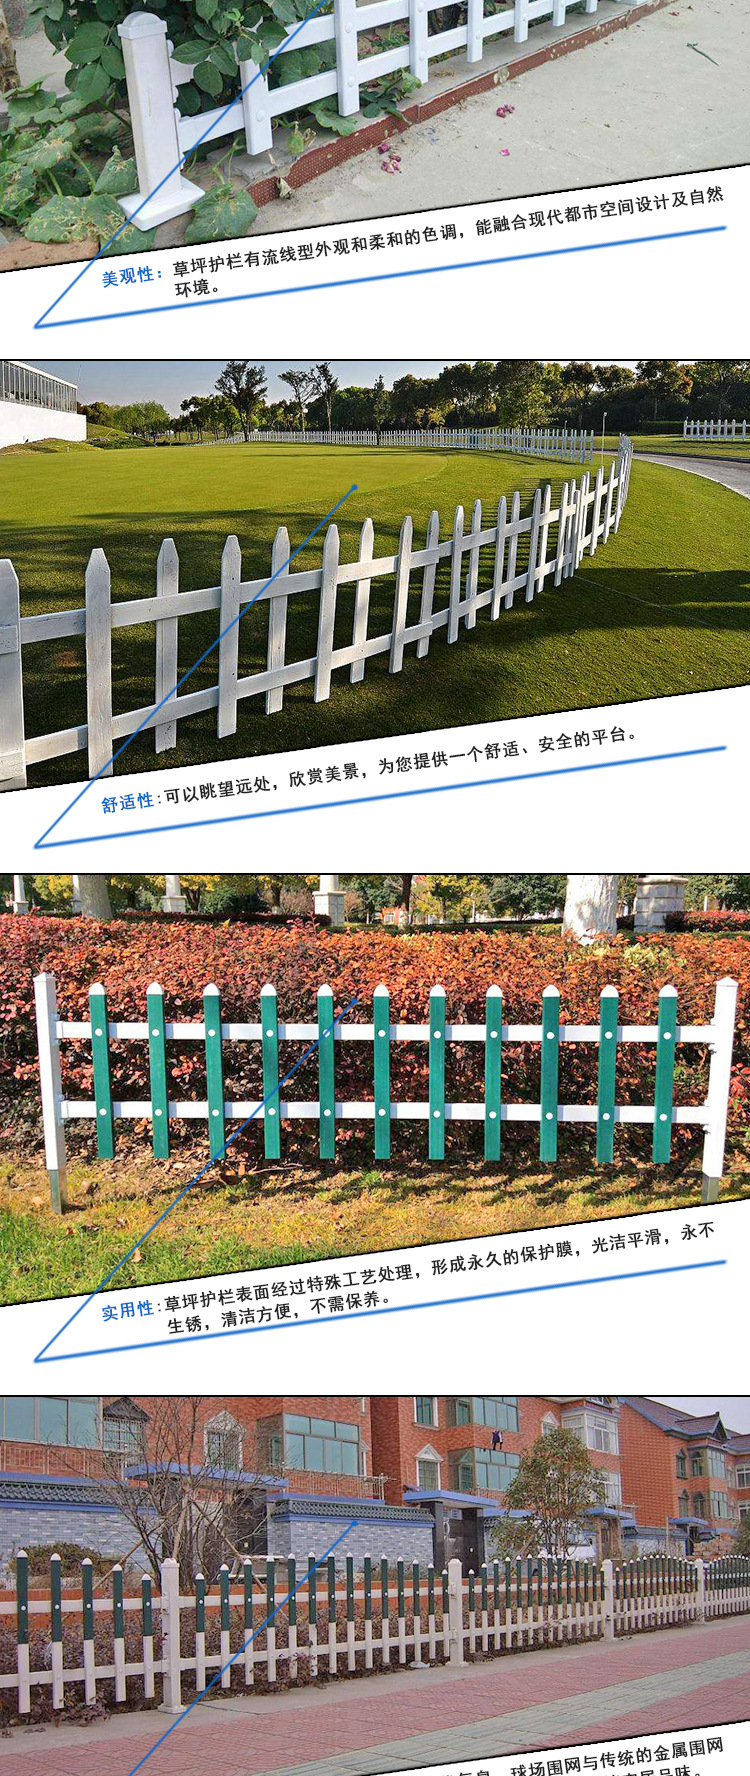 彩色塑钢草坪护栏| 绿化带隔离草坪护栏| 公园花池草坪护栏示例图2